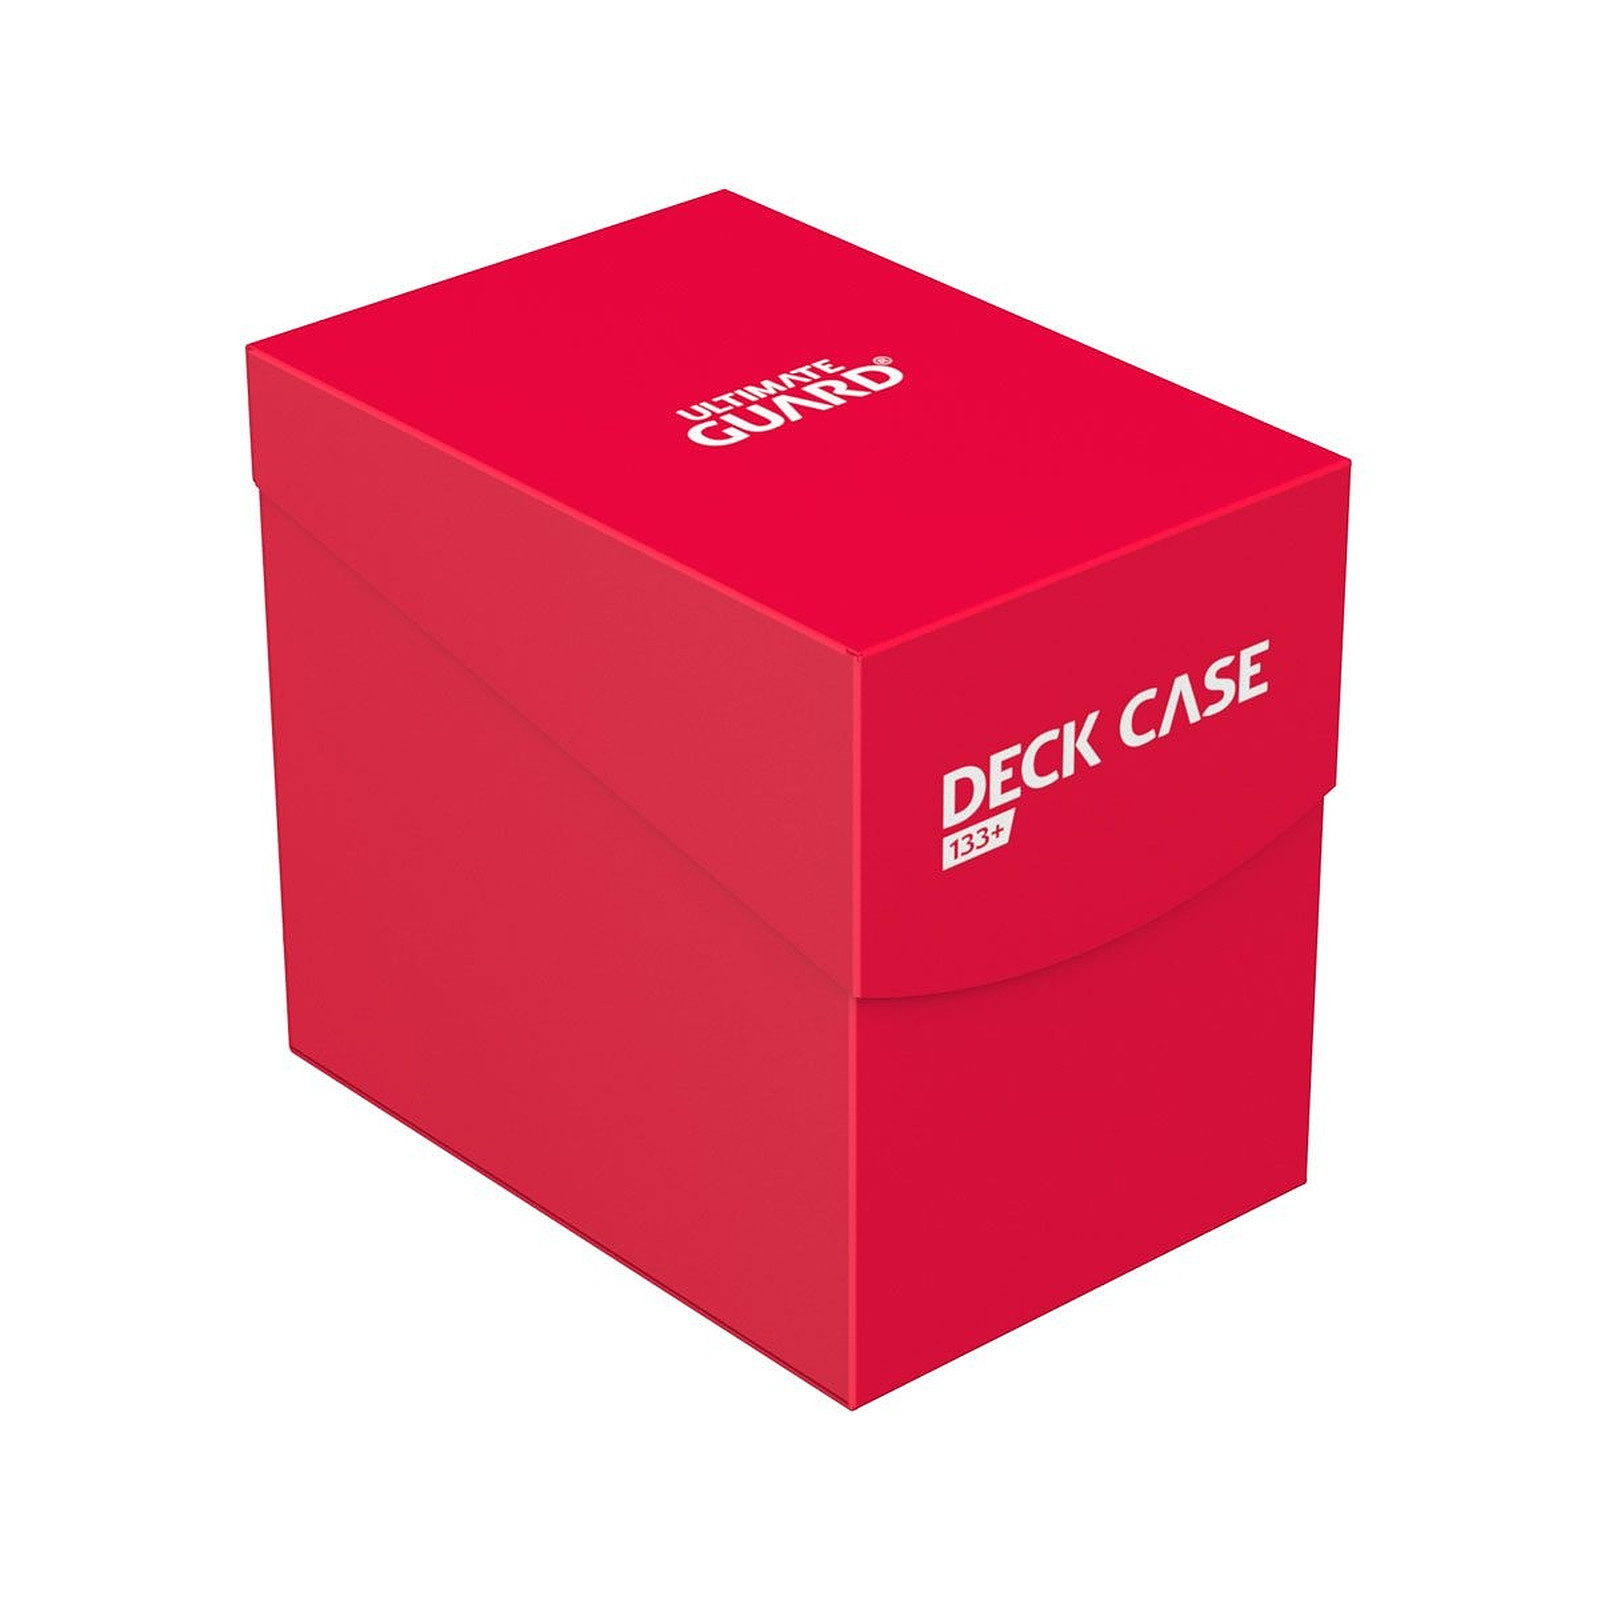 Ultimate Guard - Boite pour cartes Deck Case 133+ taille standard Rouge - Accessoire jeux Ultimate Guard